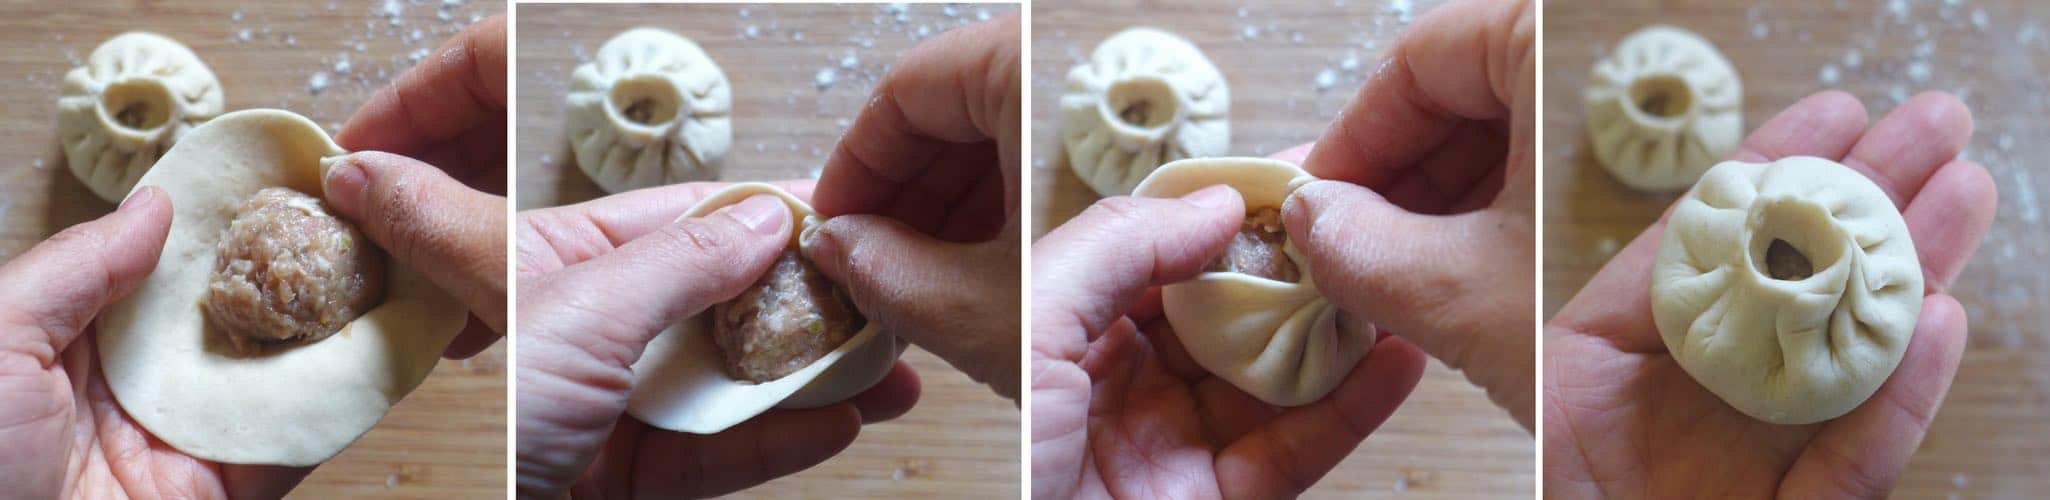 4 step photos showing how to fold a Sheng Jian Bao (pan-fried pork buns)